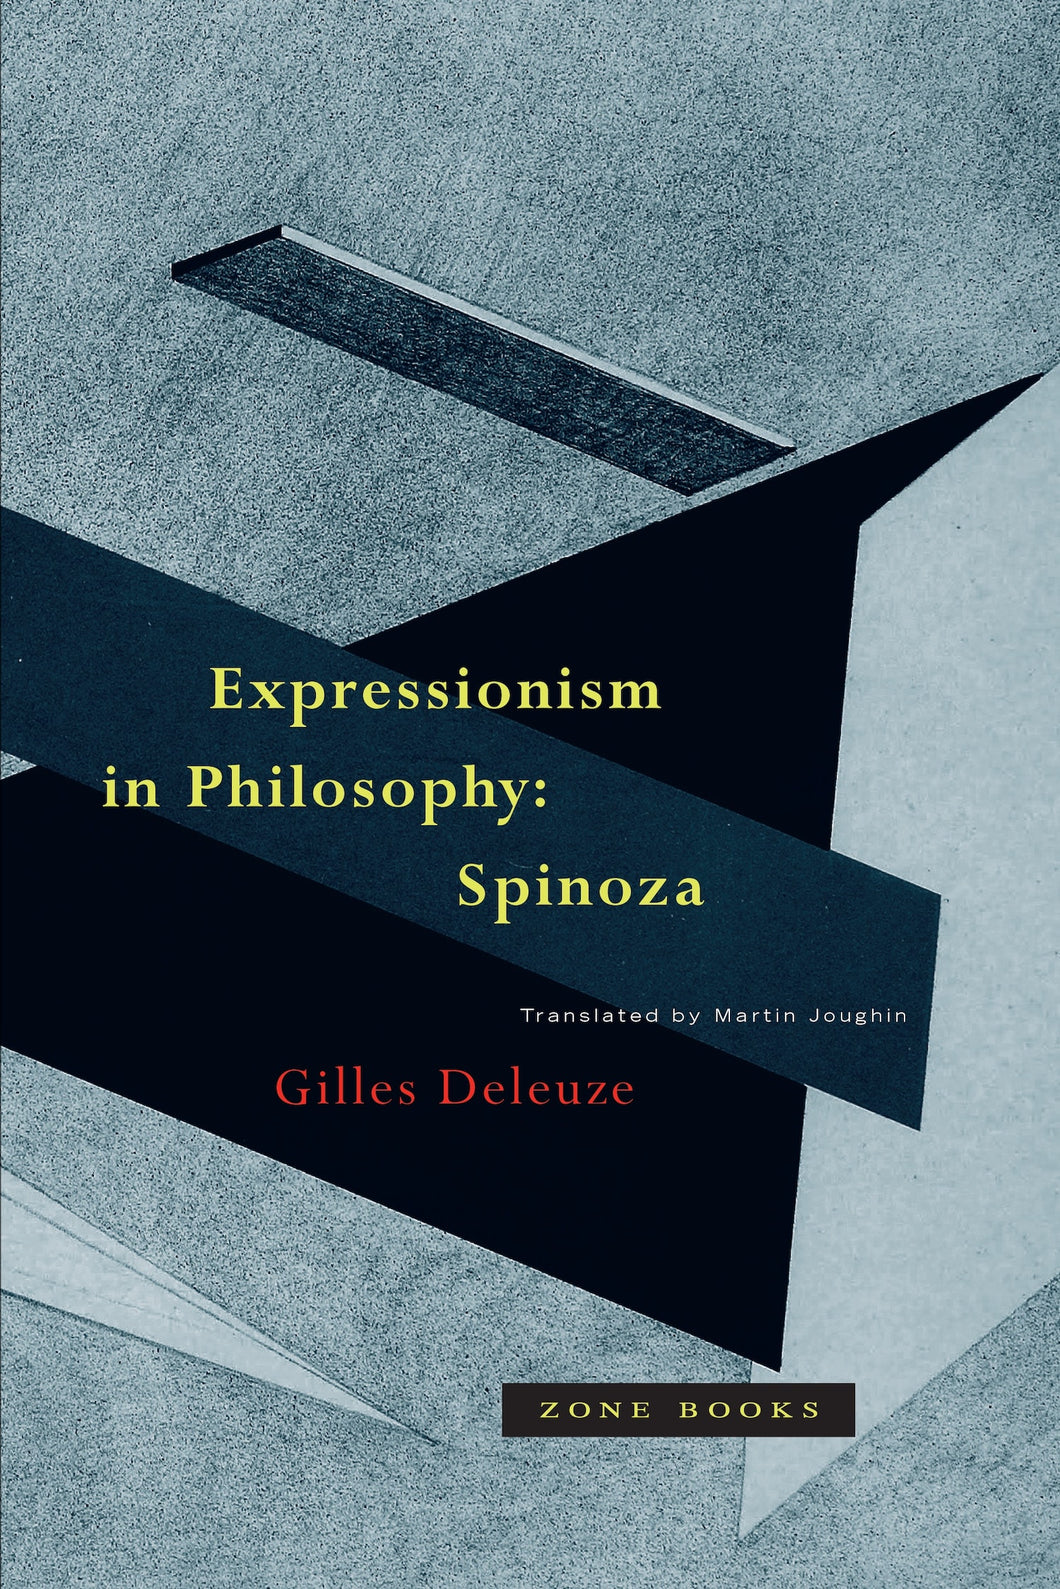 Expressionism in Philosophy ร้านหนังสือและสิ่งของ เป็นร้านหนังสือภาษาอังกฤษหายาก และร้านกาแฟ หรือ บุ๊คคาเฟ่ ตั้งอยู่สุขุมวิท กรุงเทพ